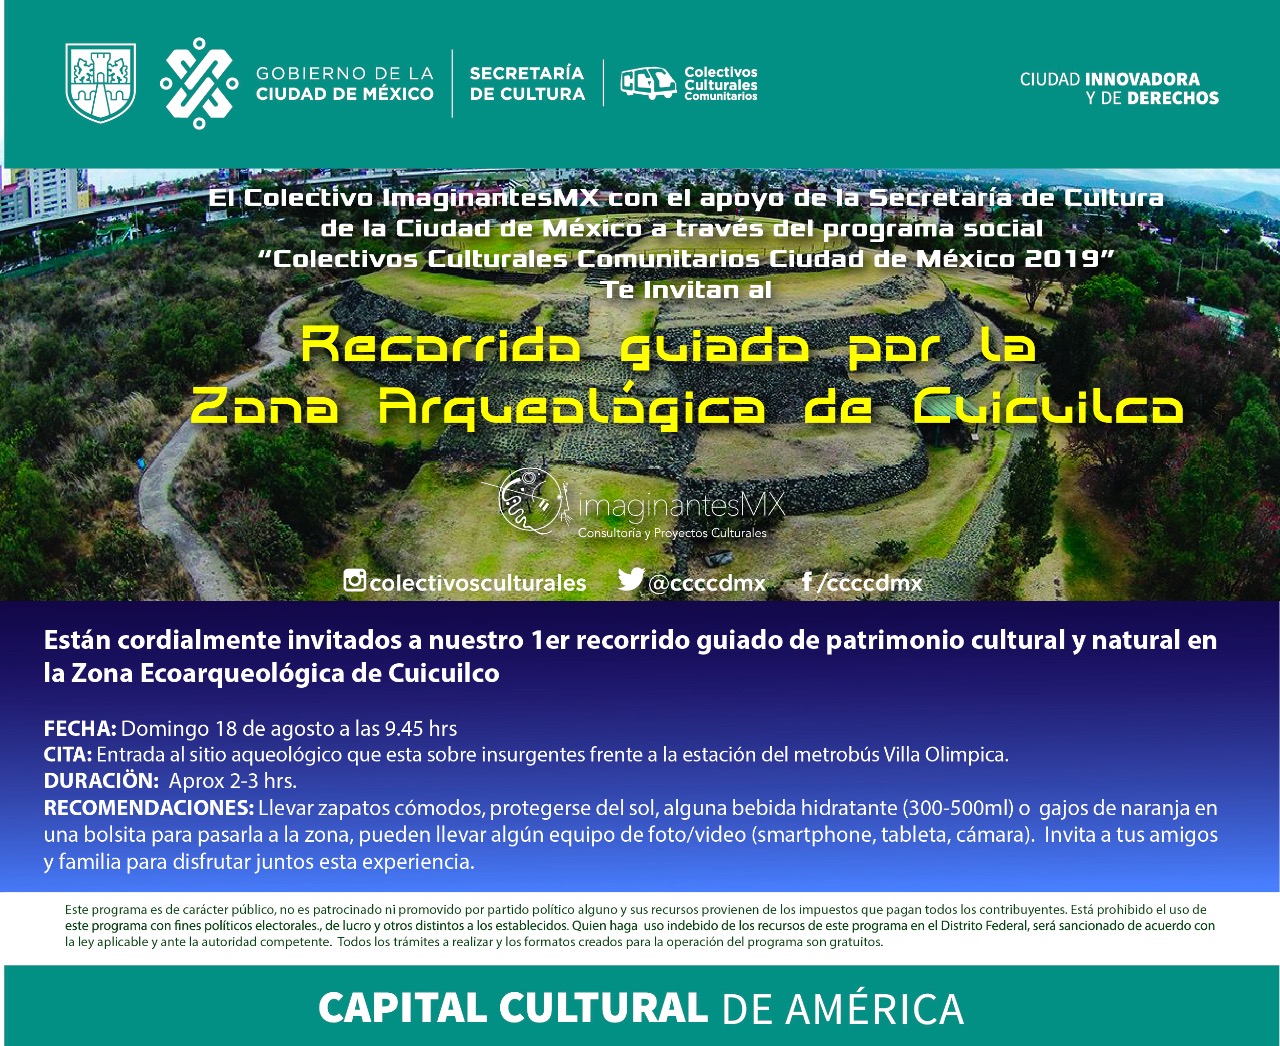 Recorrido guiado en la zona arqueológica de Cuicuilco